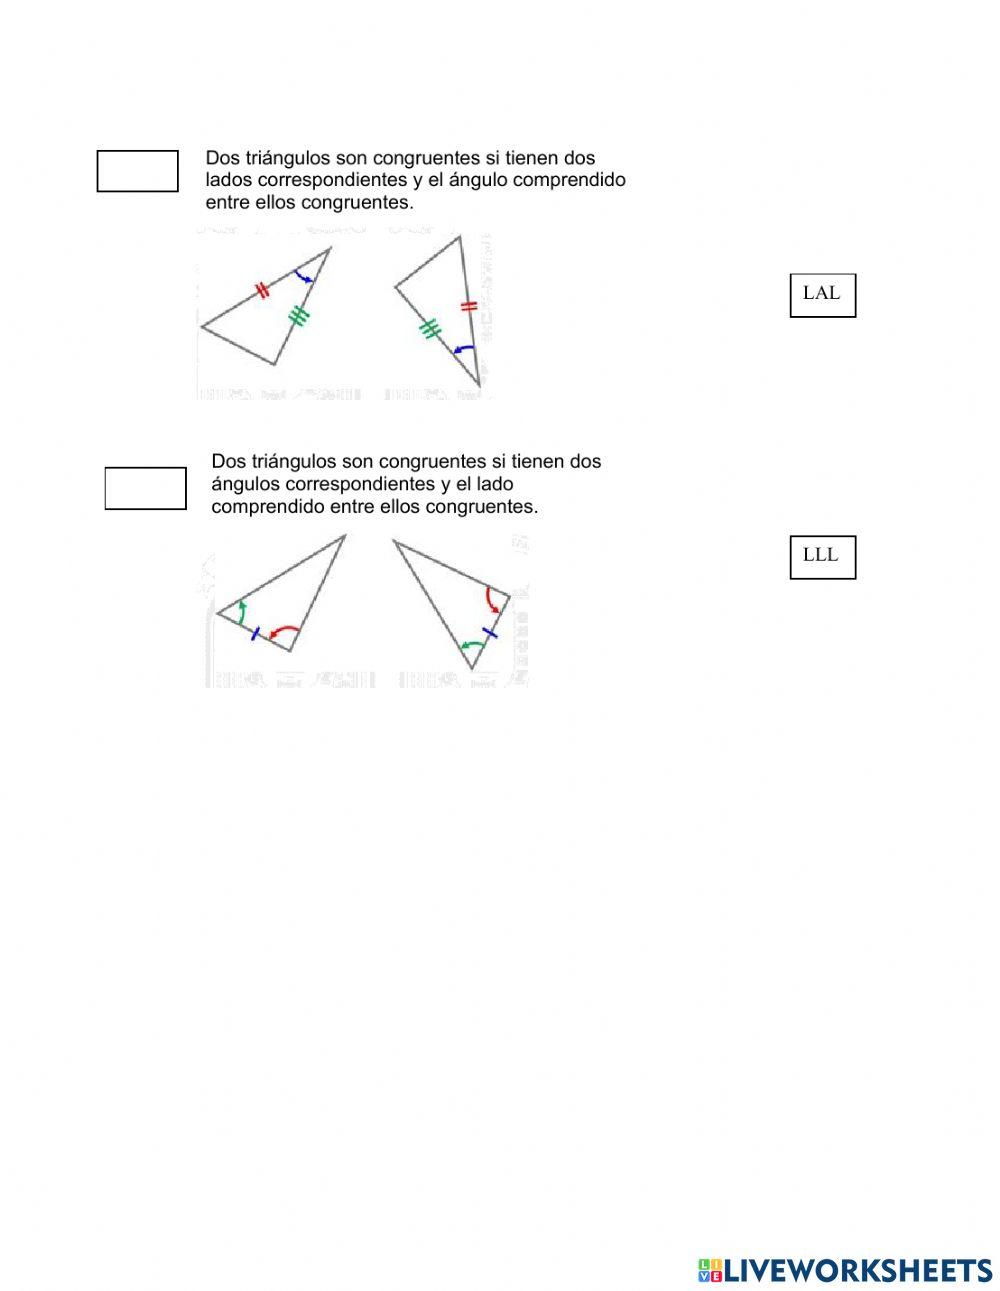 Criterios de congruencia de los triángulos.